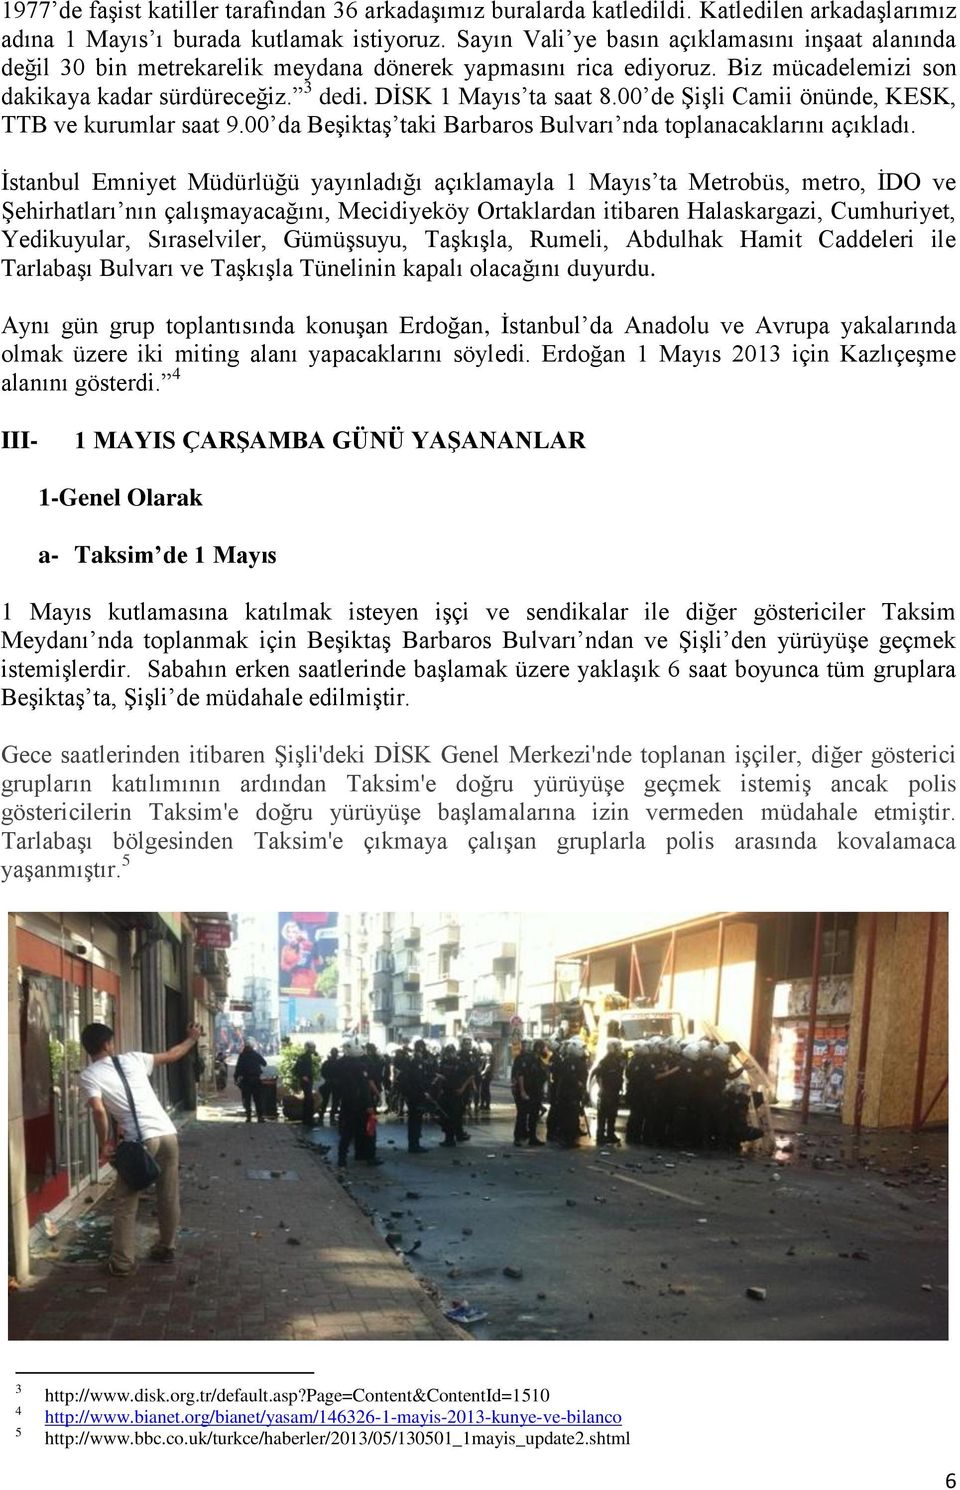 00 de Şişli Camii önünde, KESK, TTB ve kurumlar saat 9.00 da Beşiktaş taki Barbaros Bulvarı nda toplanacaklarını açıkladı.